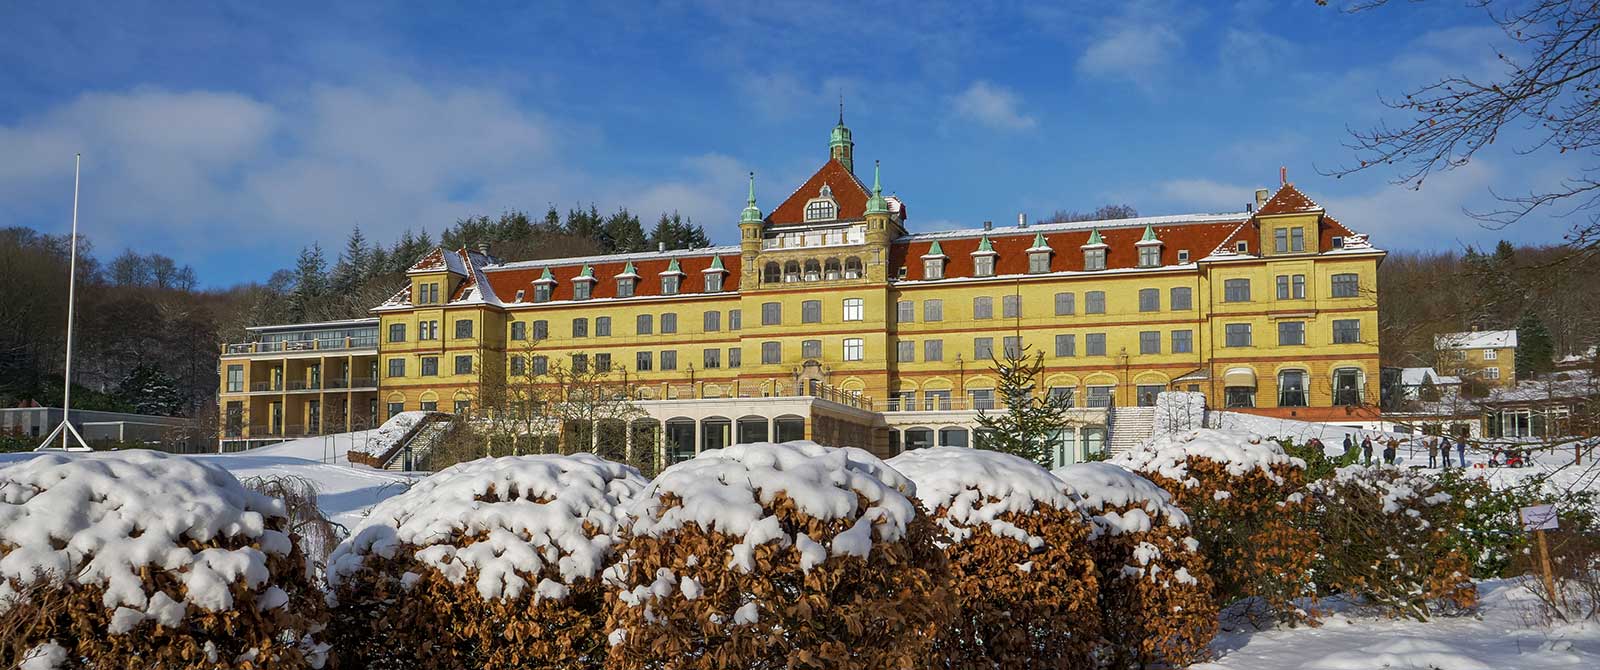 Hotel Vejlefjord i vinterklæder